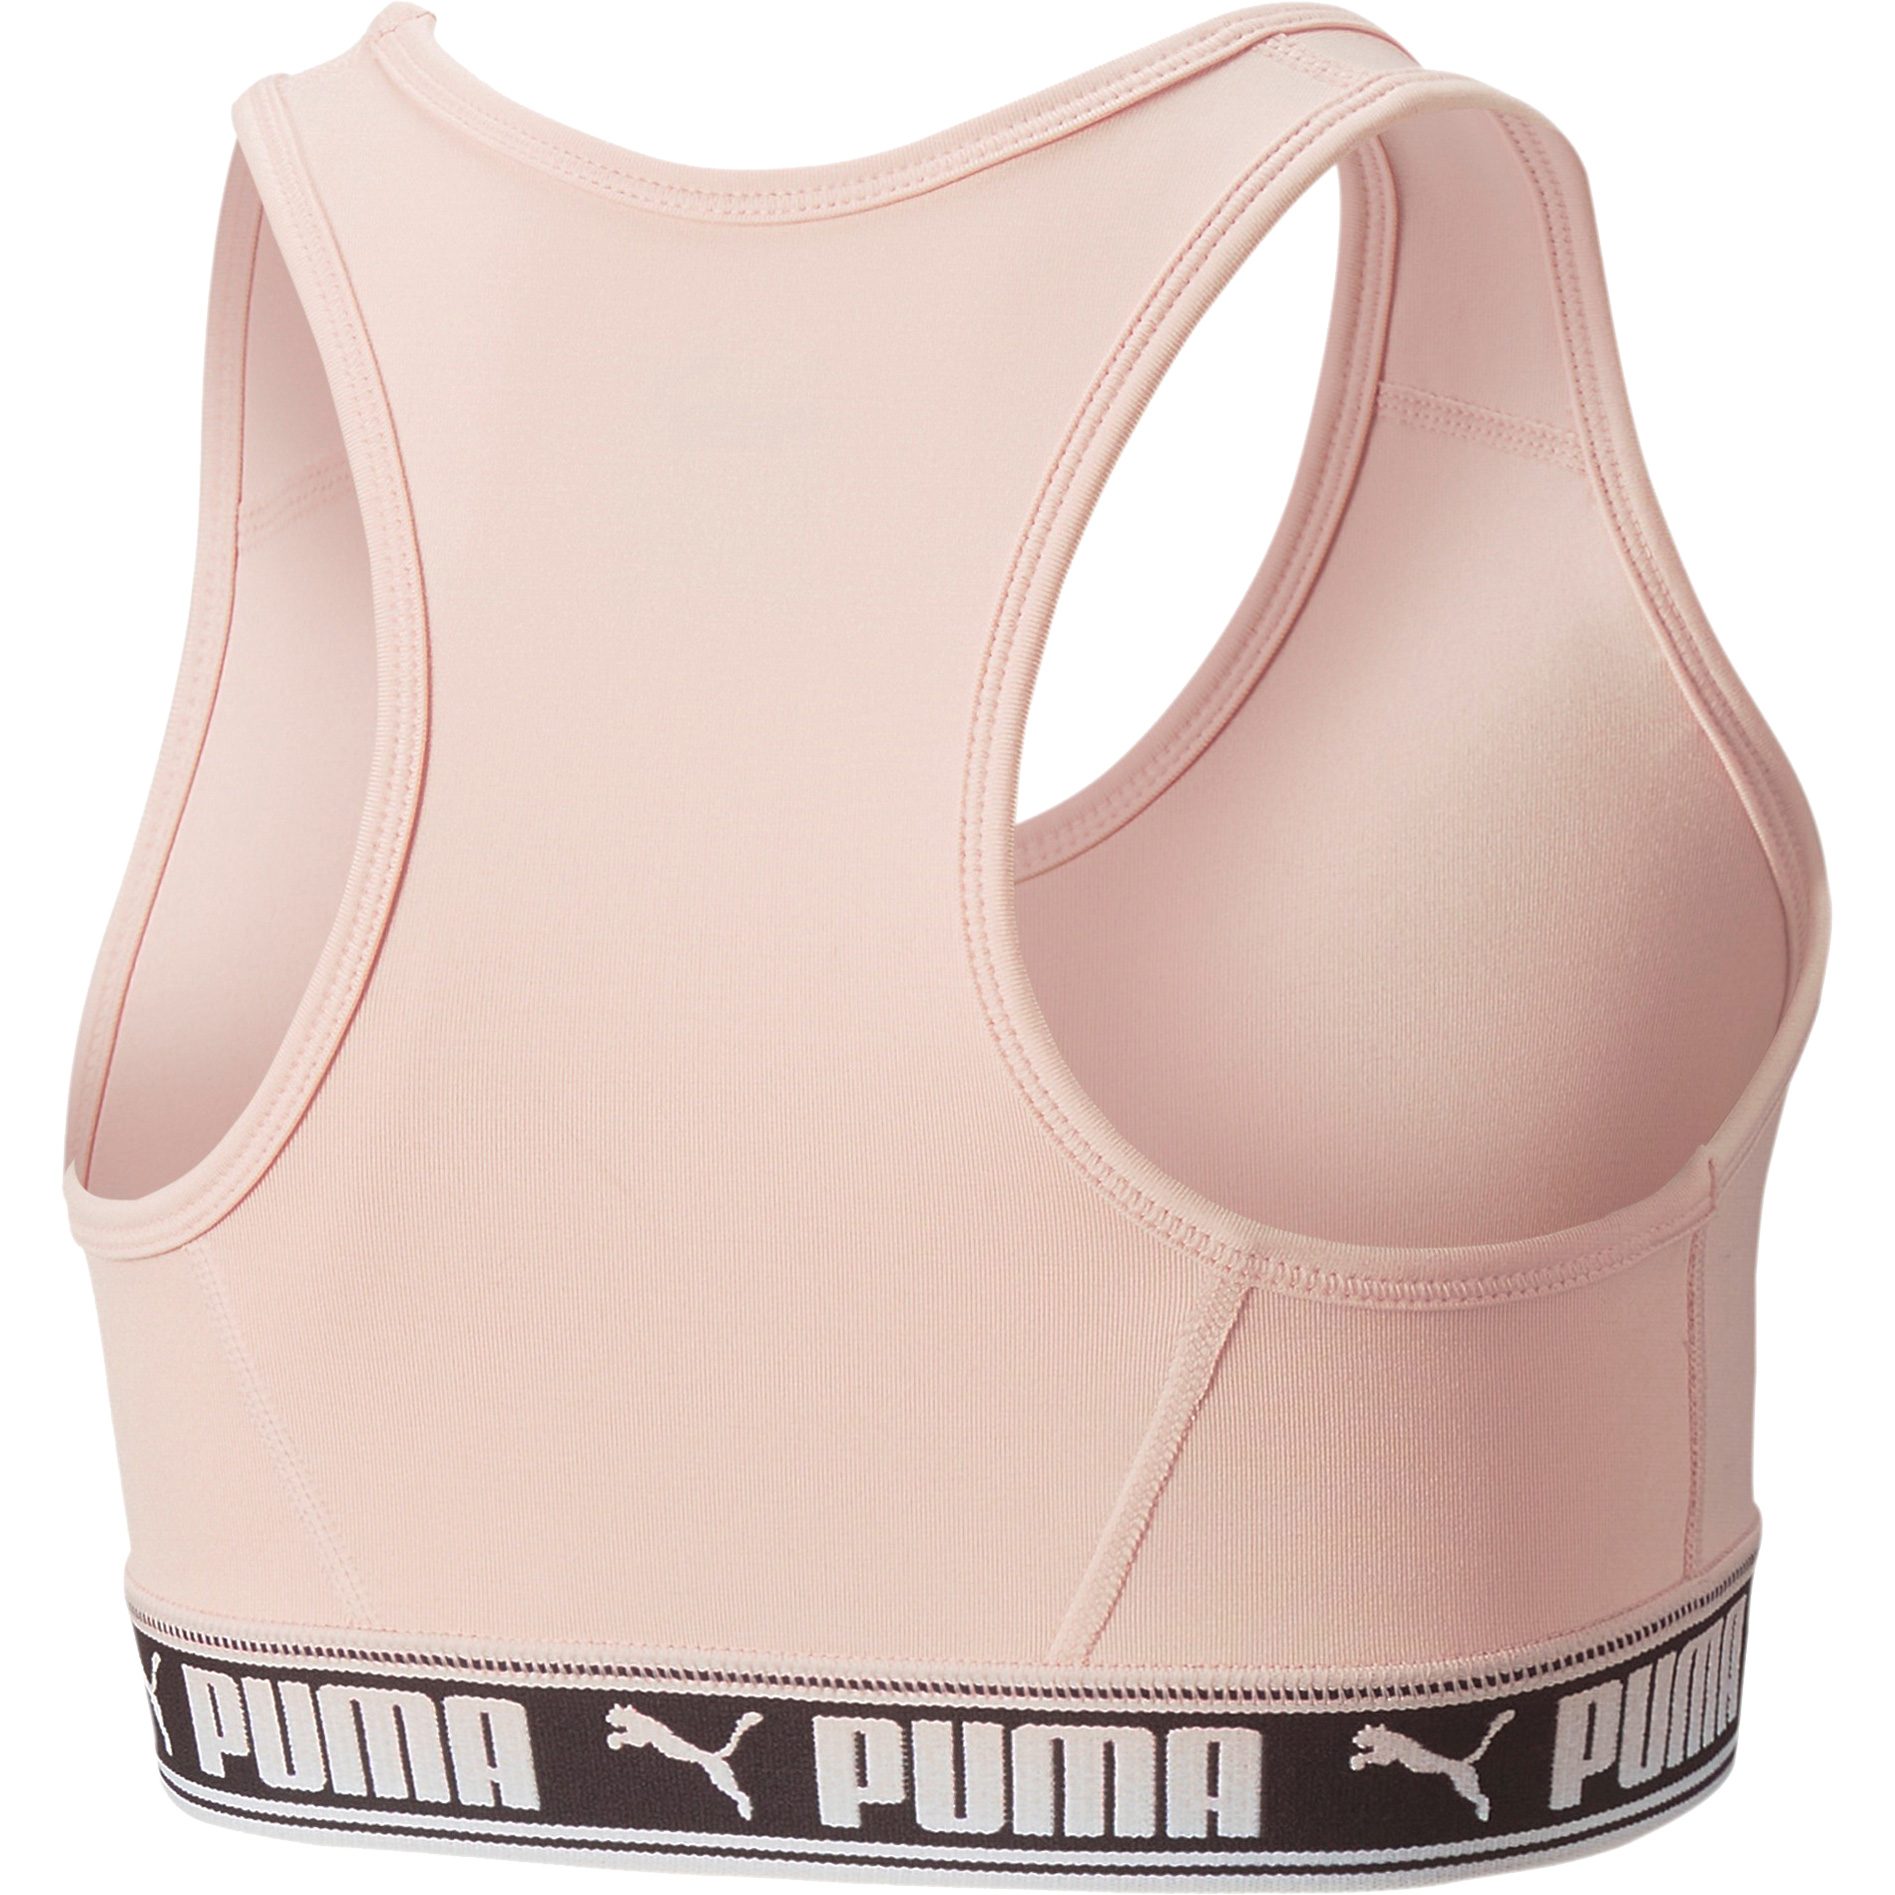 Runtrain Girls' Bra Top - Youth 8-16 years | Puma Black | PUMA Shop All  Puma | PUMA